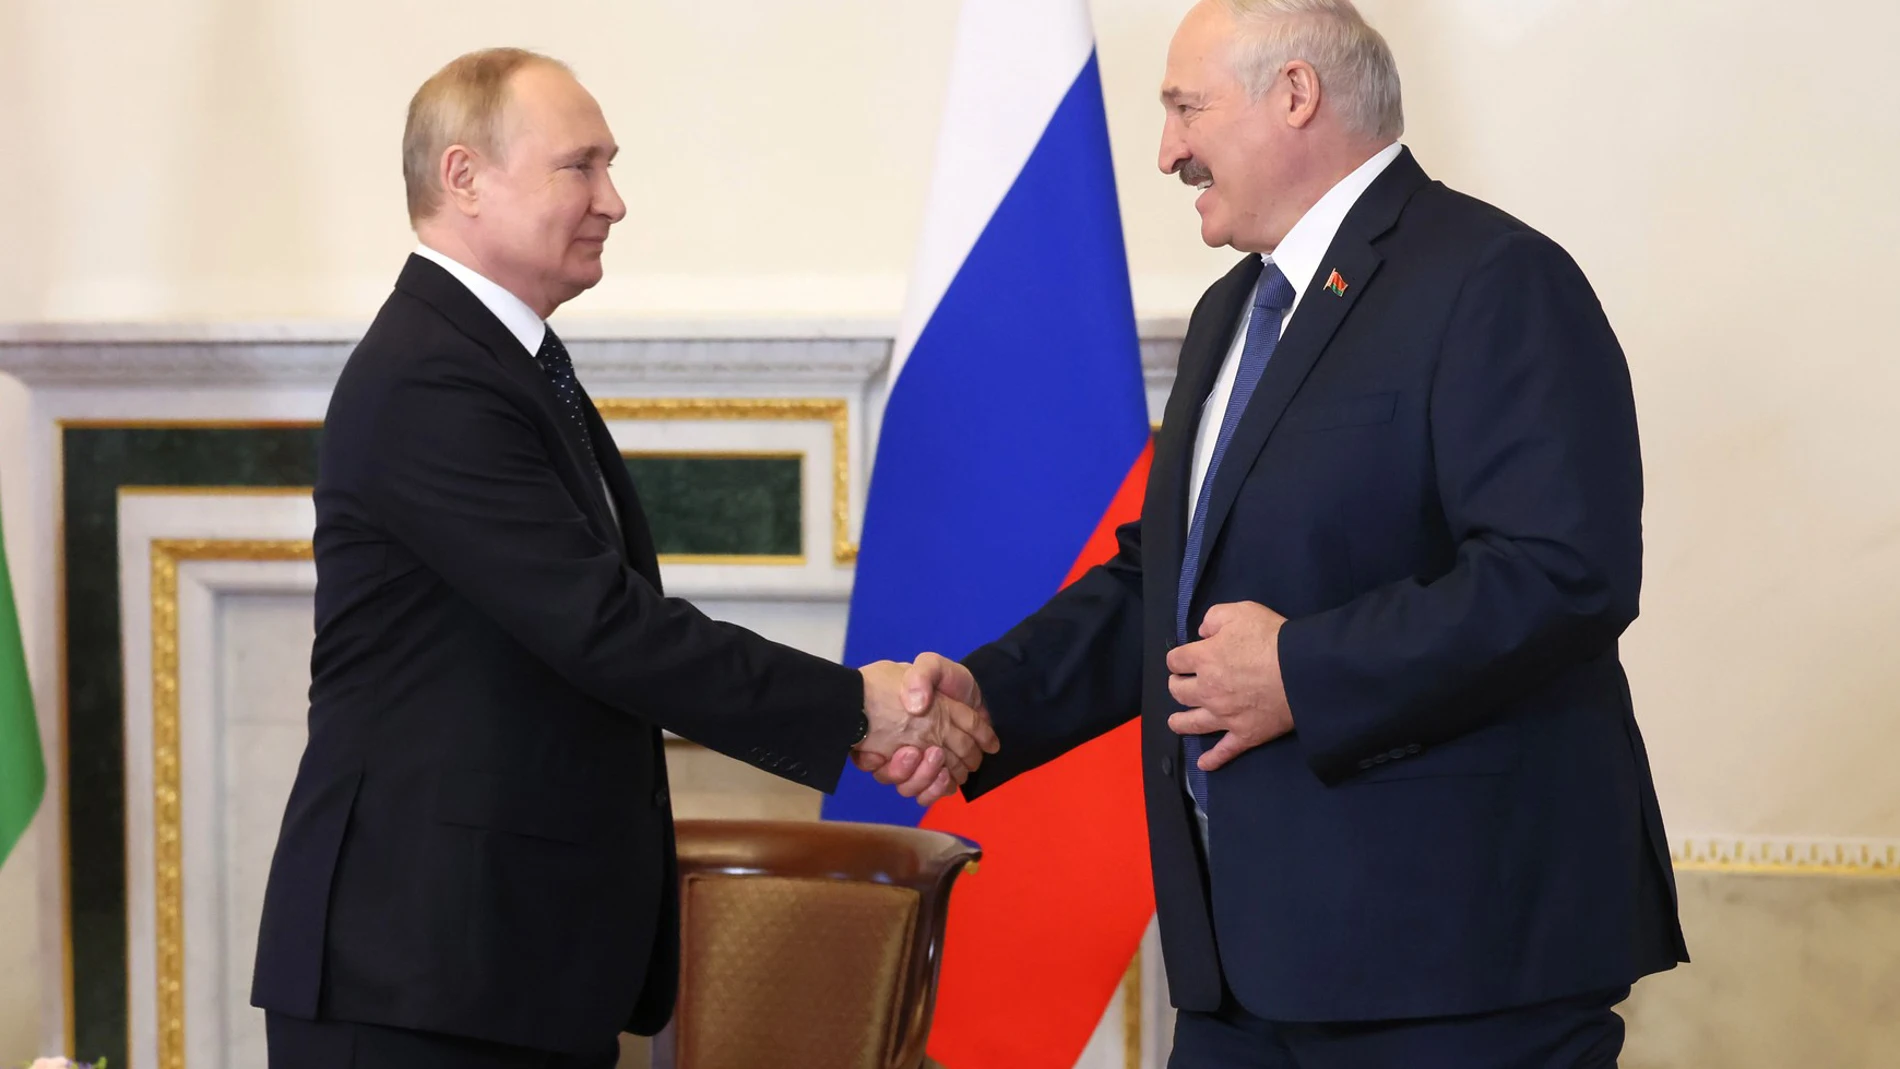 El presidente ruso Vladimir Putin (izq.) reunido con el mandatario bielorruso Alexander Lukashenko (der.)